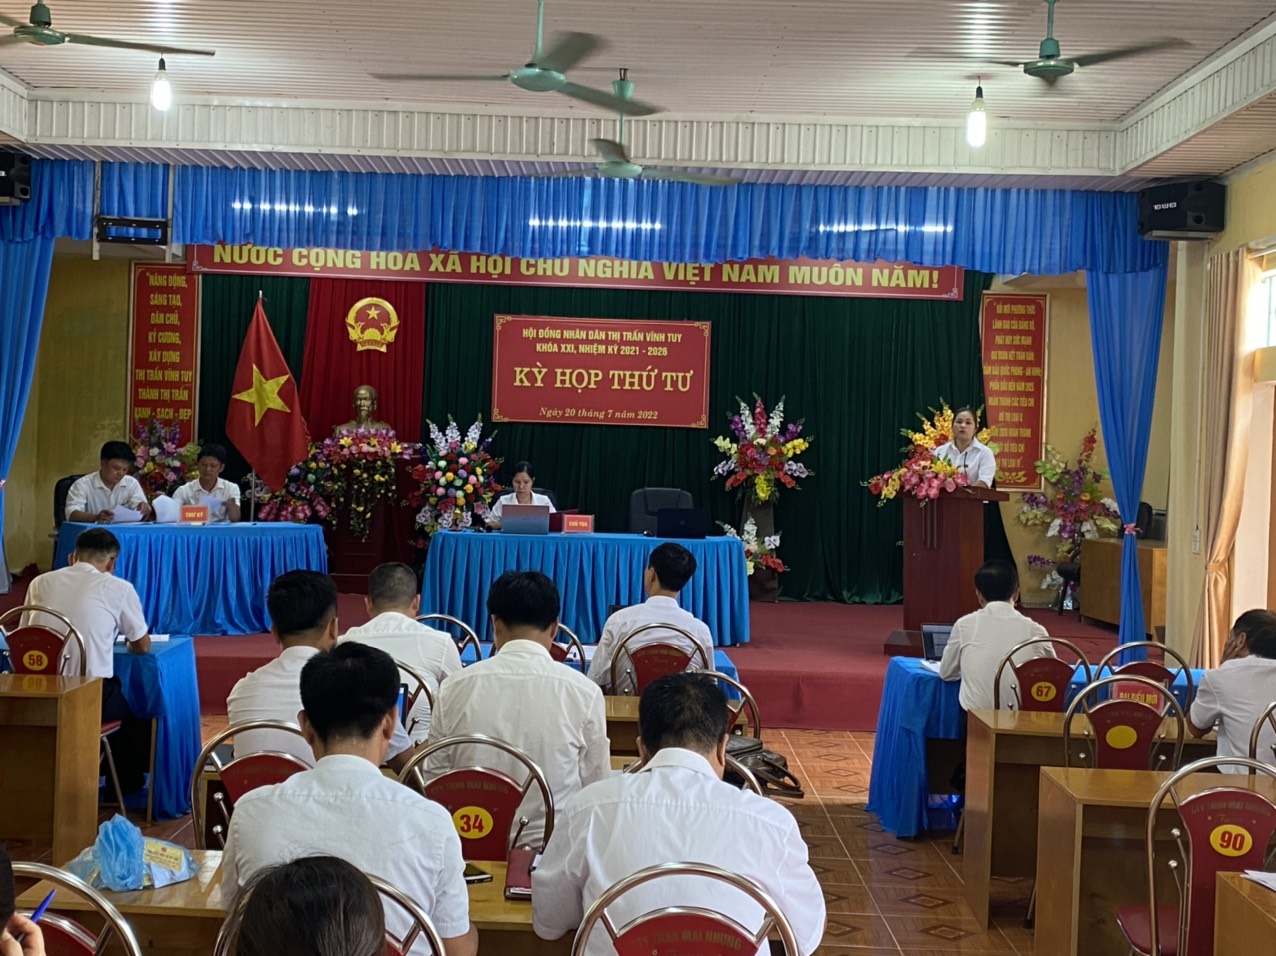 Ngày 20 tháng 7 năm 2022, Hội đồng nhân dân thị trấn Vĩnh Tuy đã tổ chức kỳ họp thứ Tư, HĐND thị trấn khóa XXI, nhiệm kỳ 2021 - 2026.